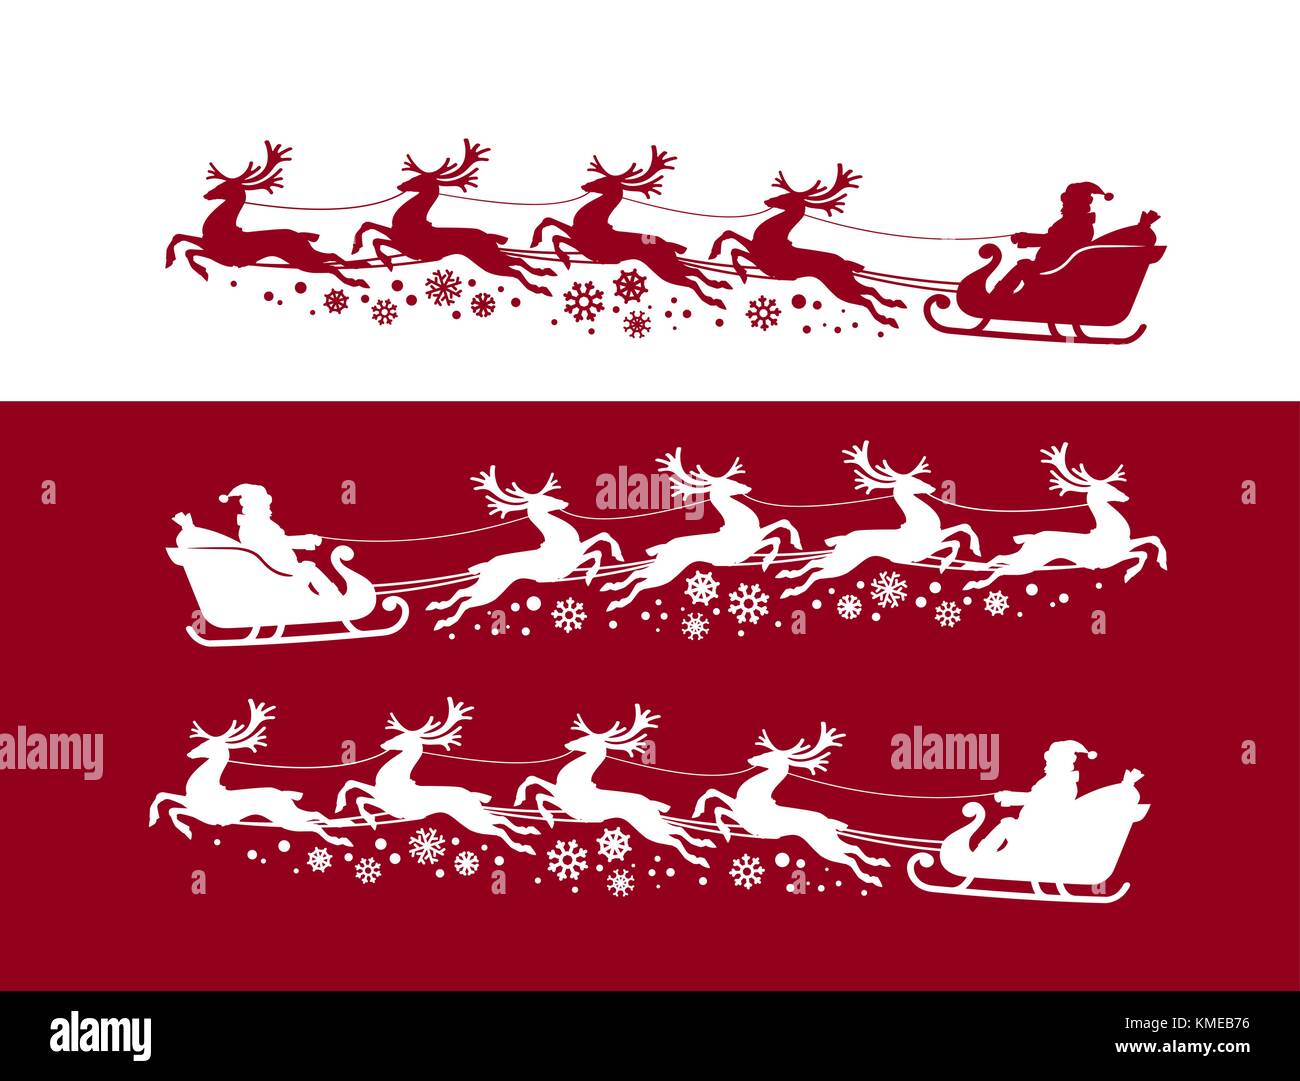 Weihnachtsmann im Schlitten mit Rentieren. Weihnachten, Weihnachtskonzept. Silhouettenvektor-Illustration Stock Vektor